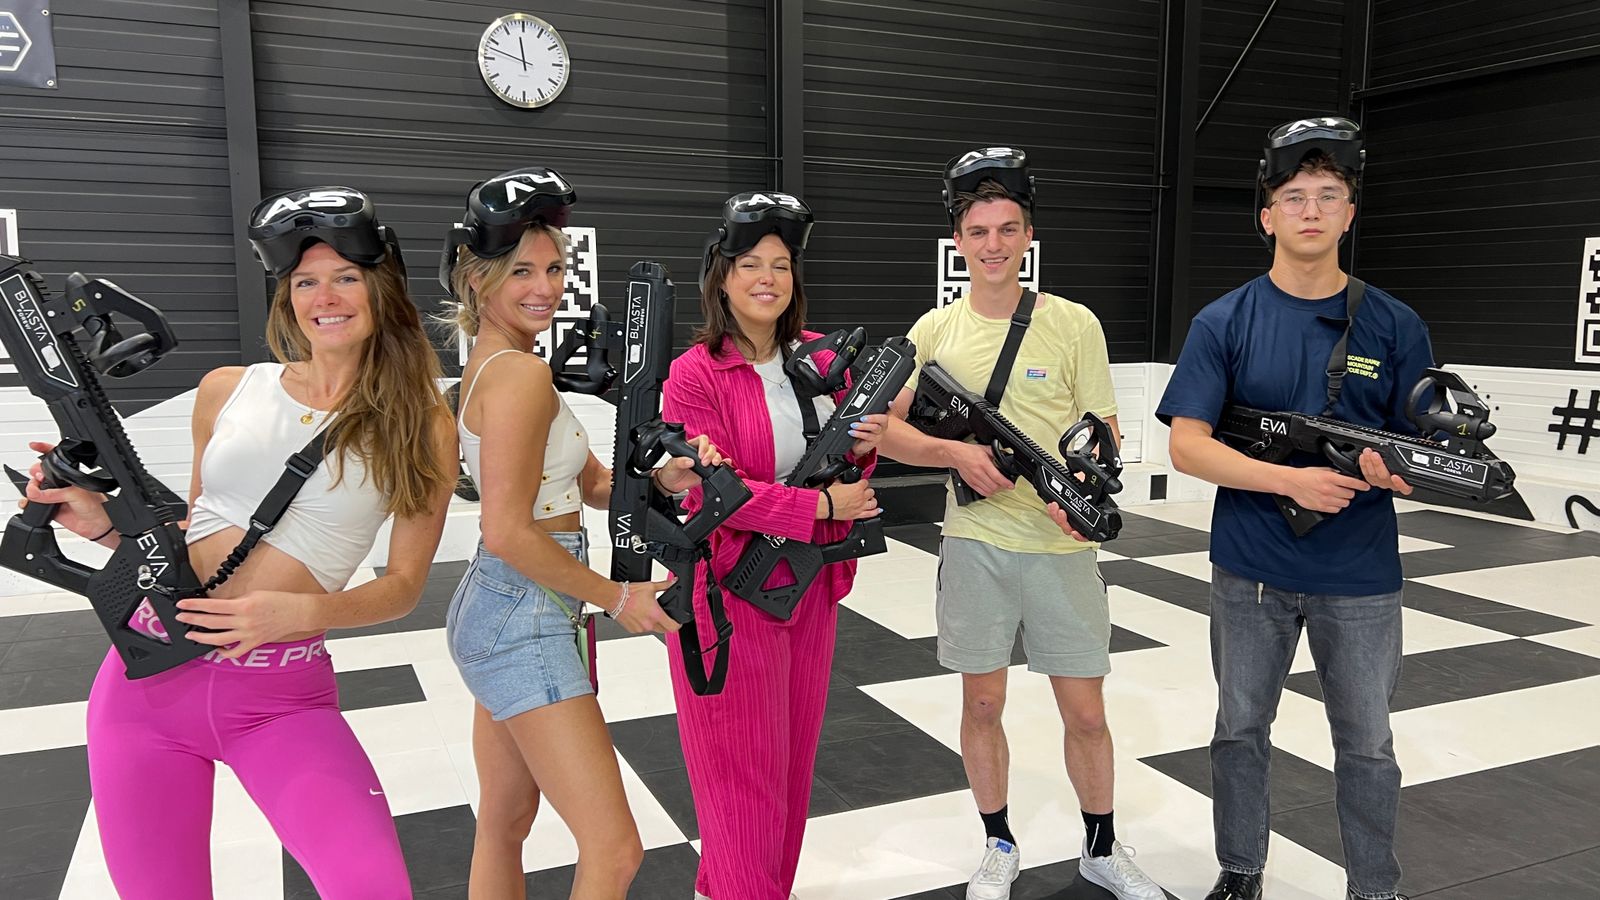 VR Game bij Kickcity Genk: De ultieme beleving voor jou en je vrienden!